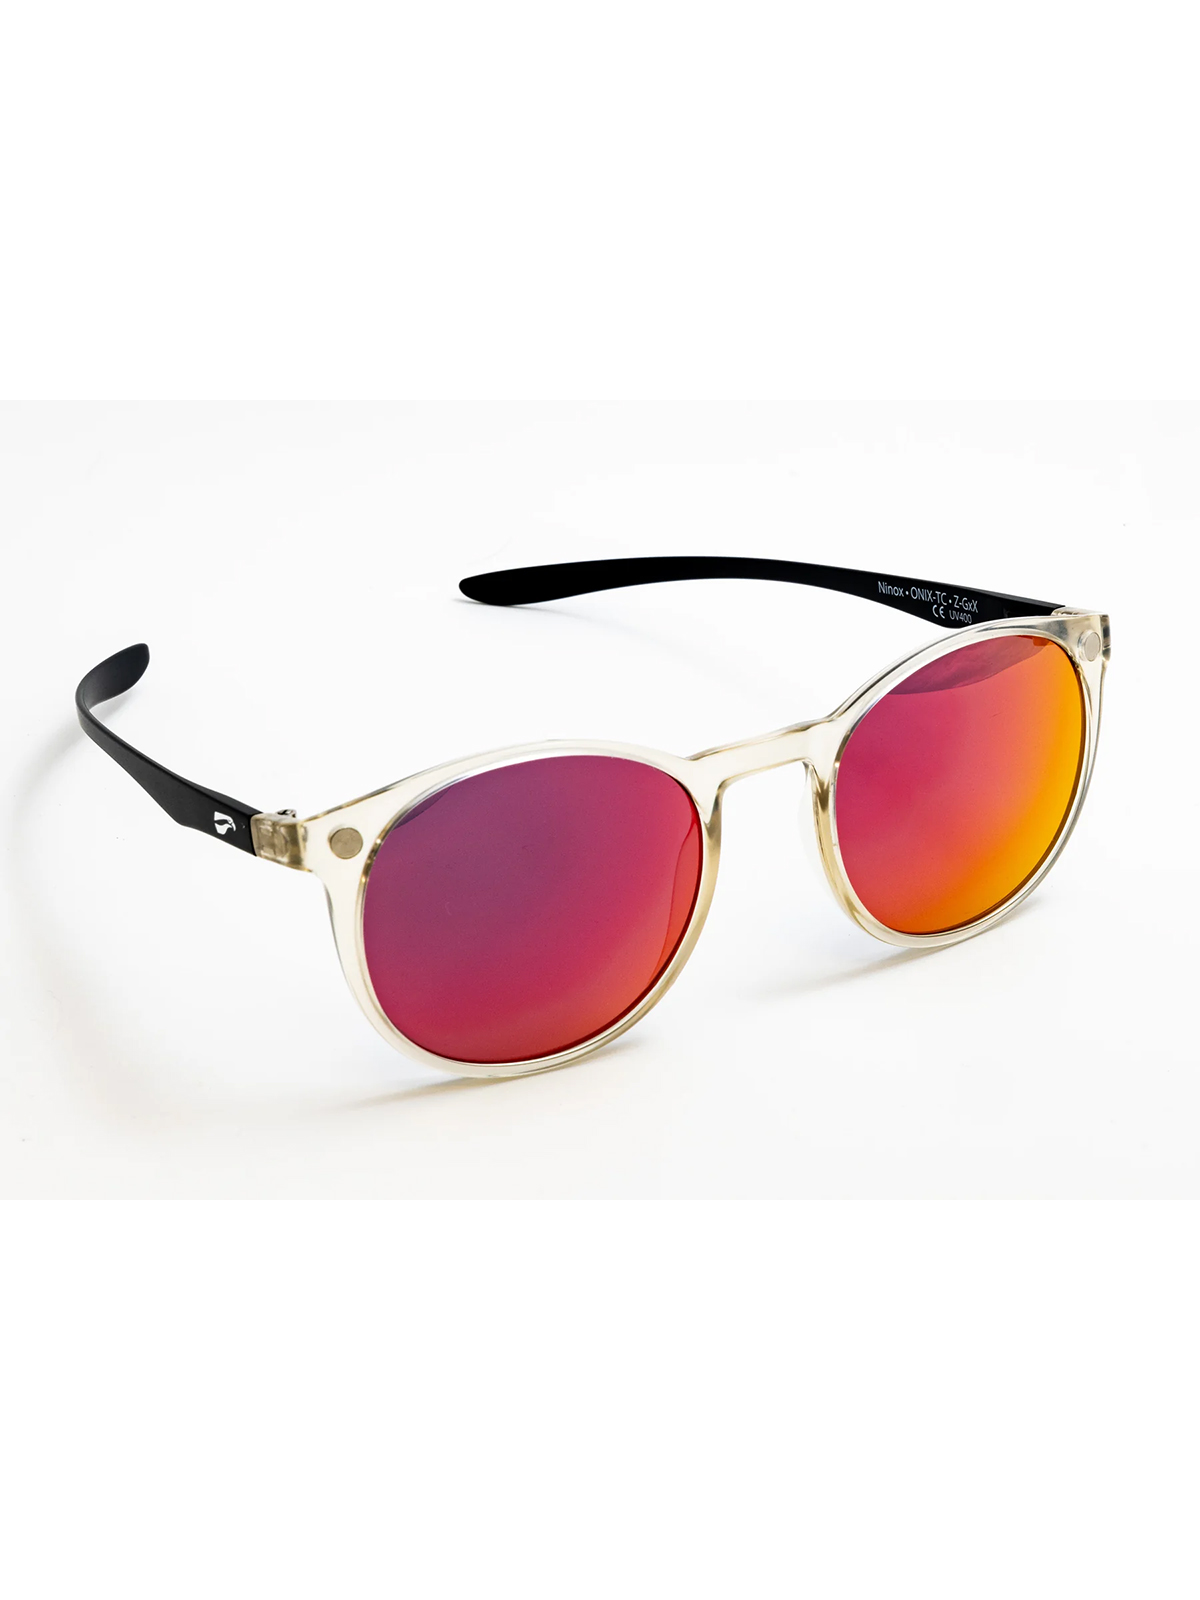 Flying Eyes Sonnenbrille Ninox - Rahmen durchsichtig, Bügel matt schwarz, Linsen Sunset (verspiegelt)